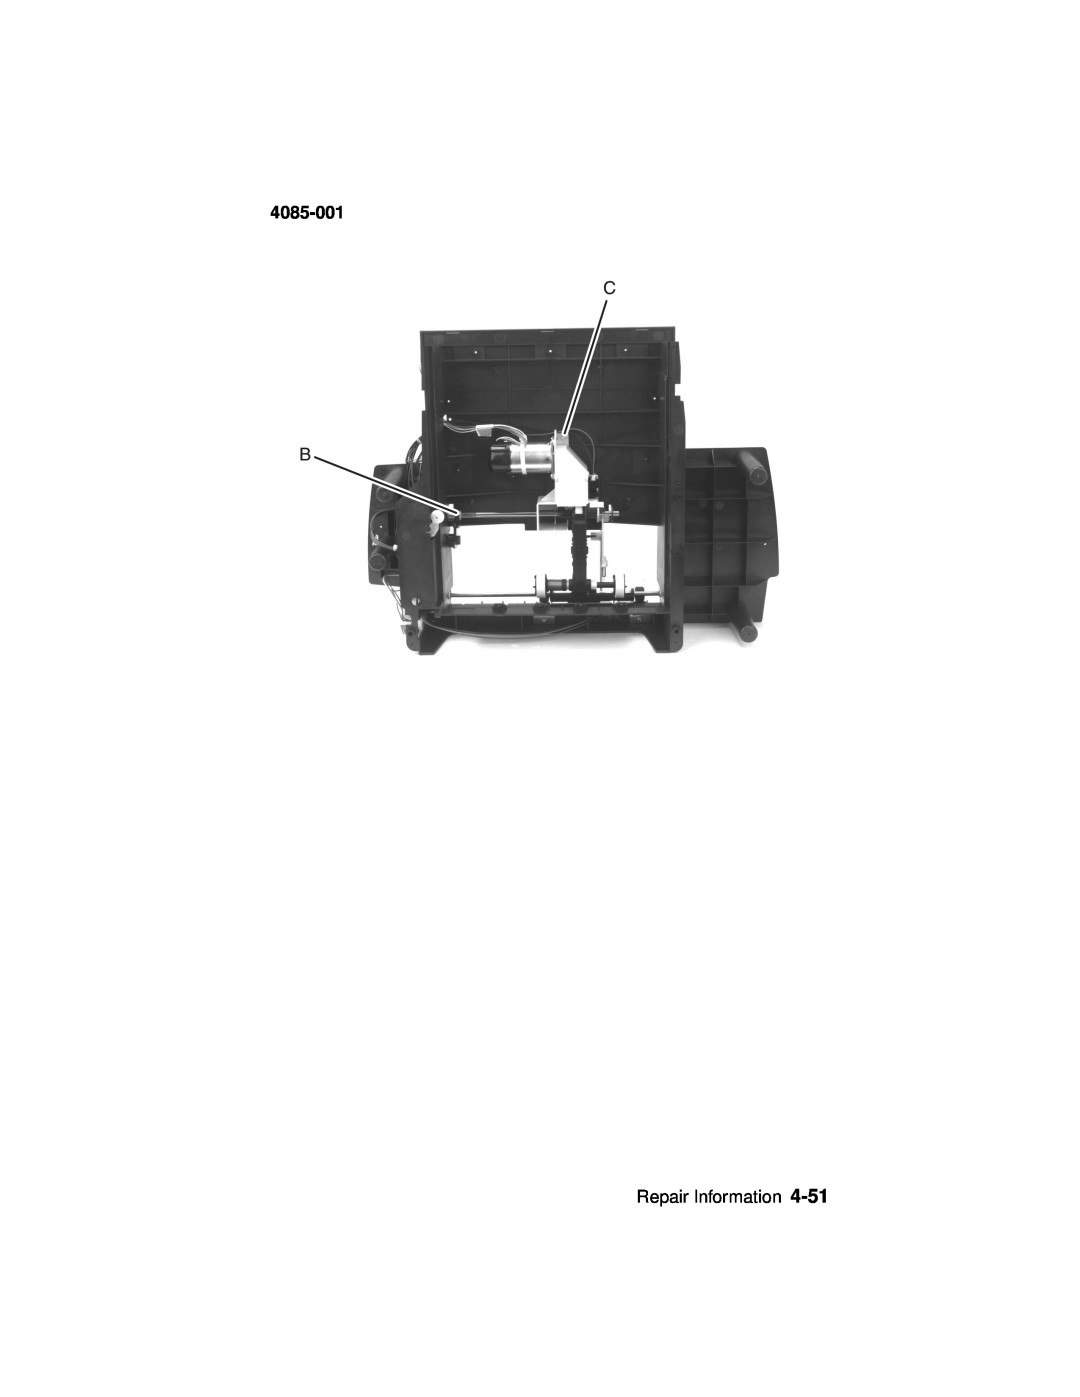 Lexmark Printer, J110 manual 4085-001, Repair Information 